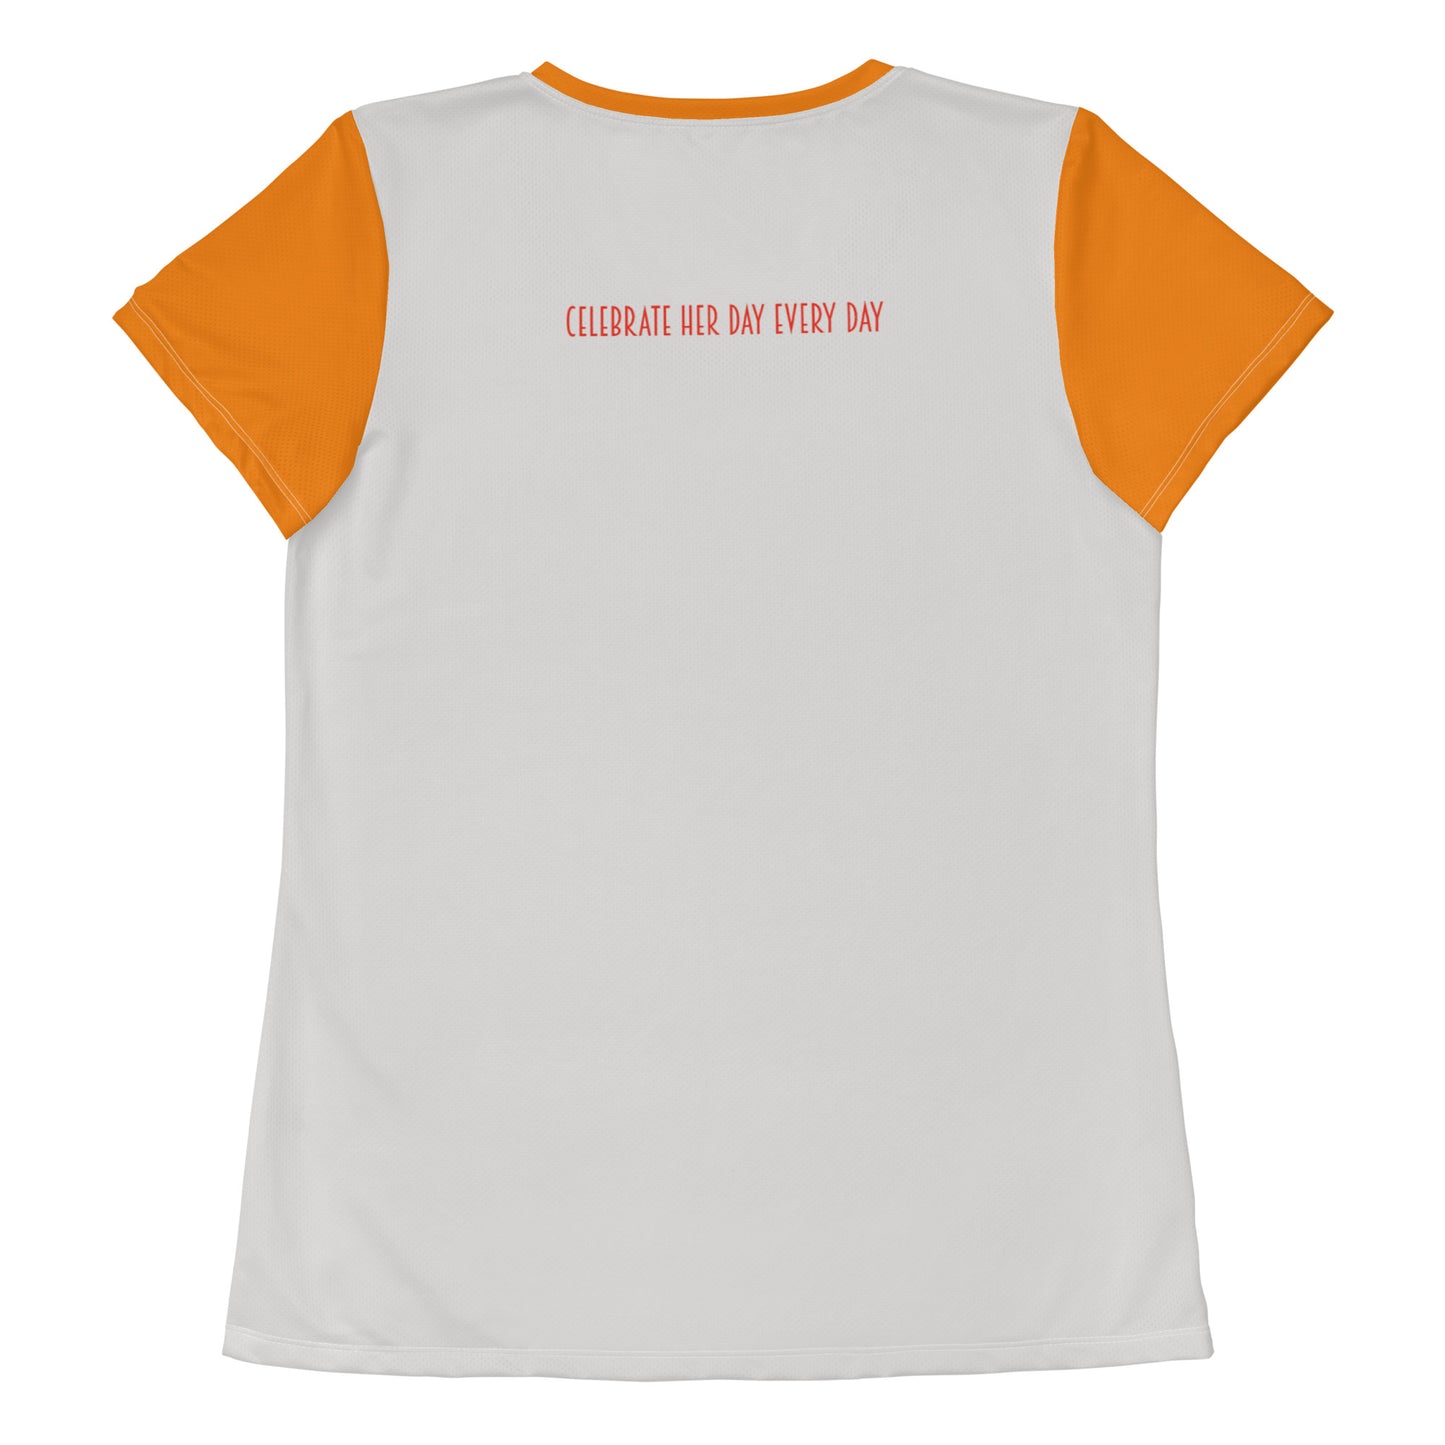 HerDay V5 - Women's Athletic T-shirt